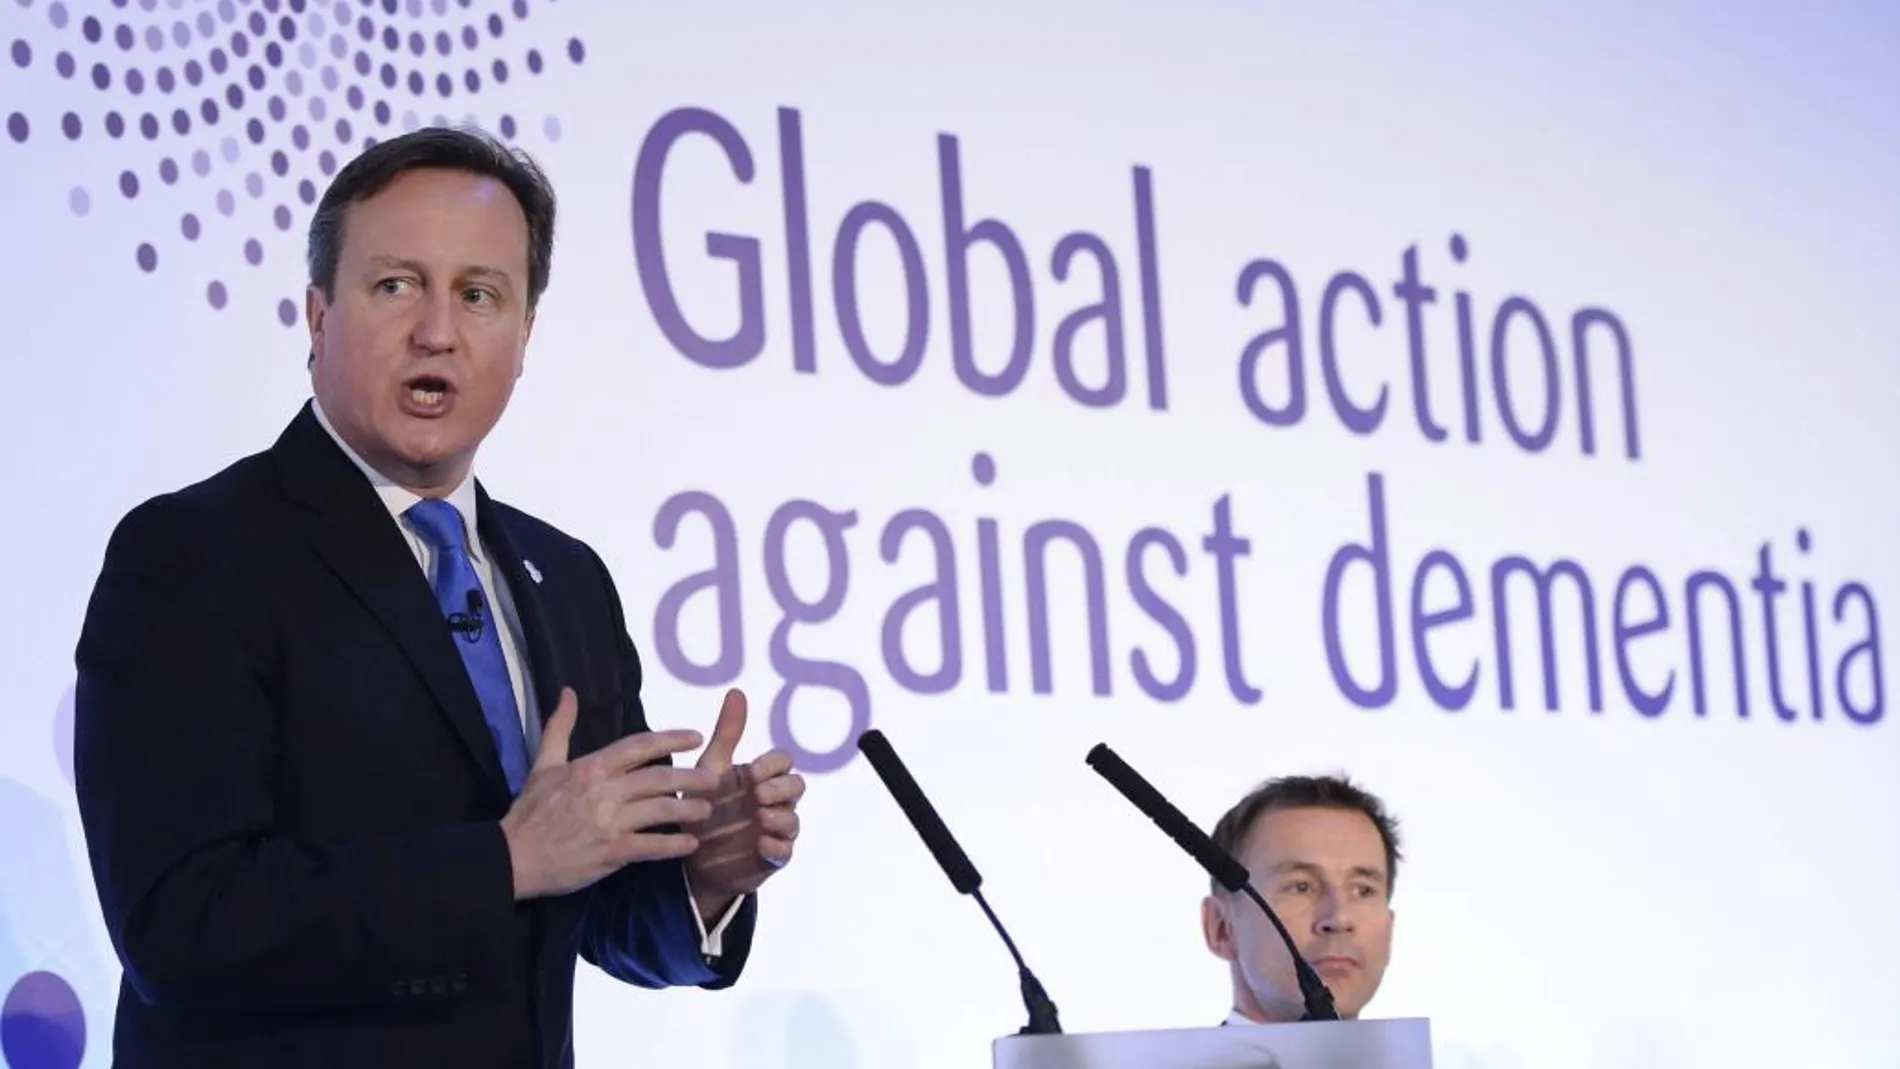 El primer ministro británico, David Cameron, en una cumbre contra la demencia